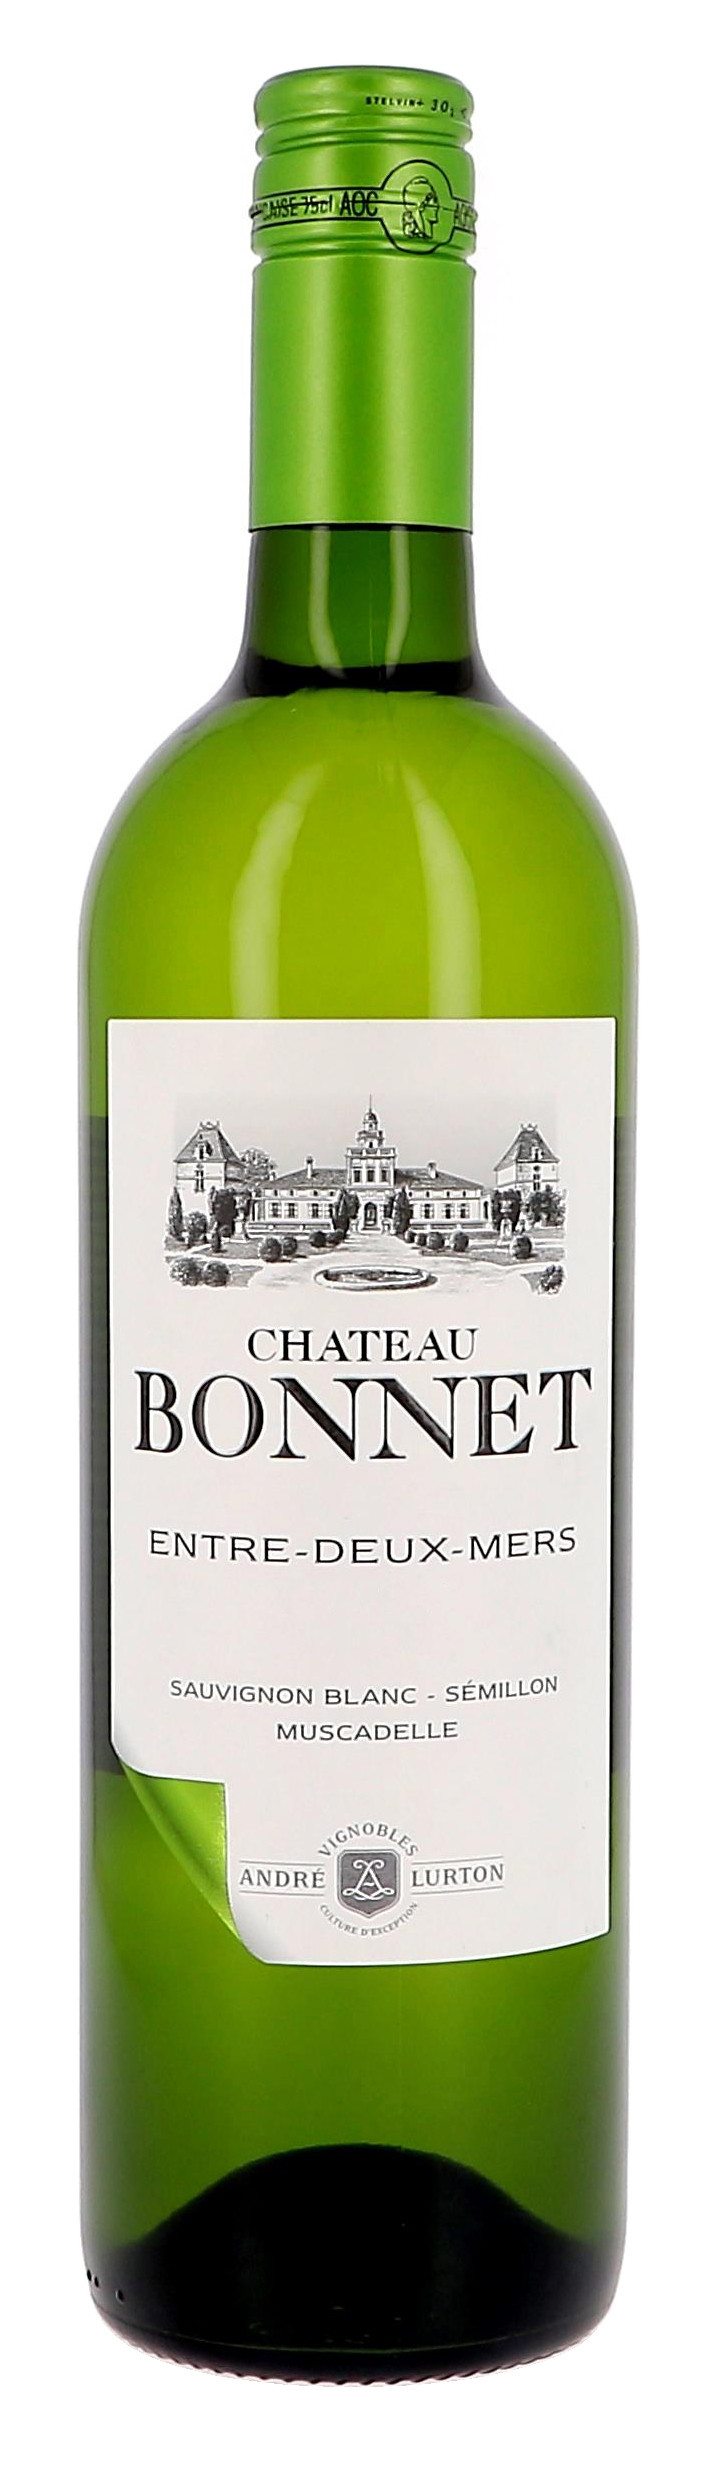 Chateau Bonnet 75cl 2017 Entre-Deux-Mers Andre Kopen Nevejan